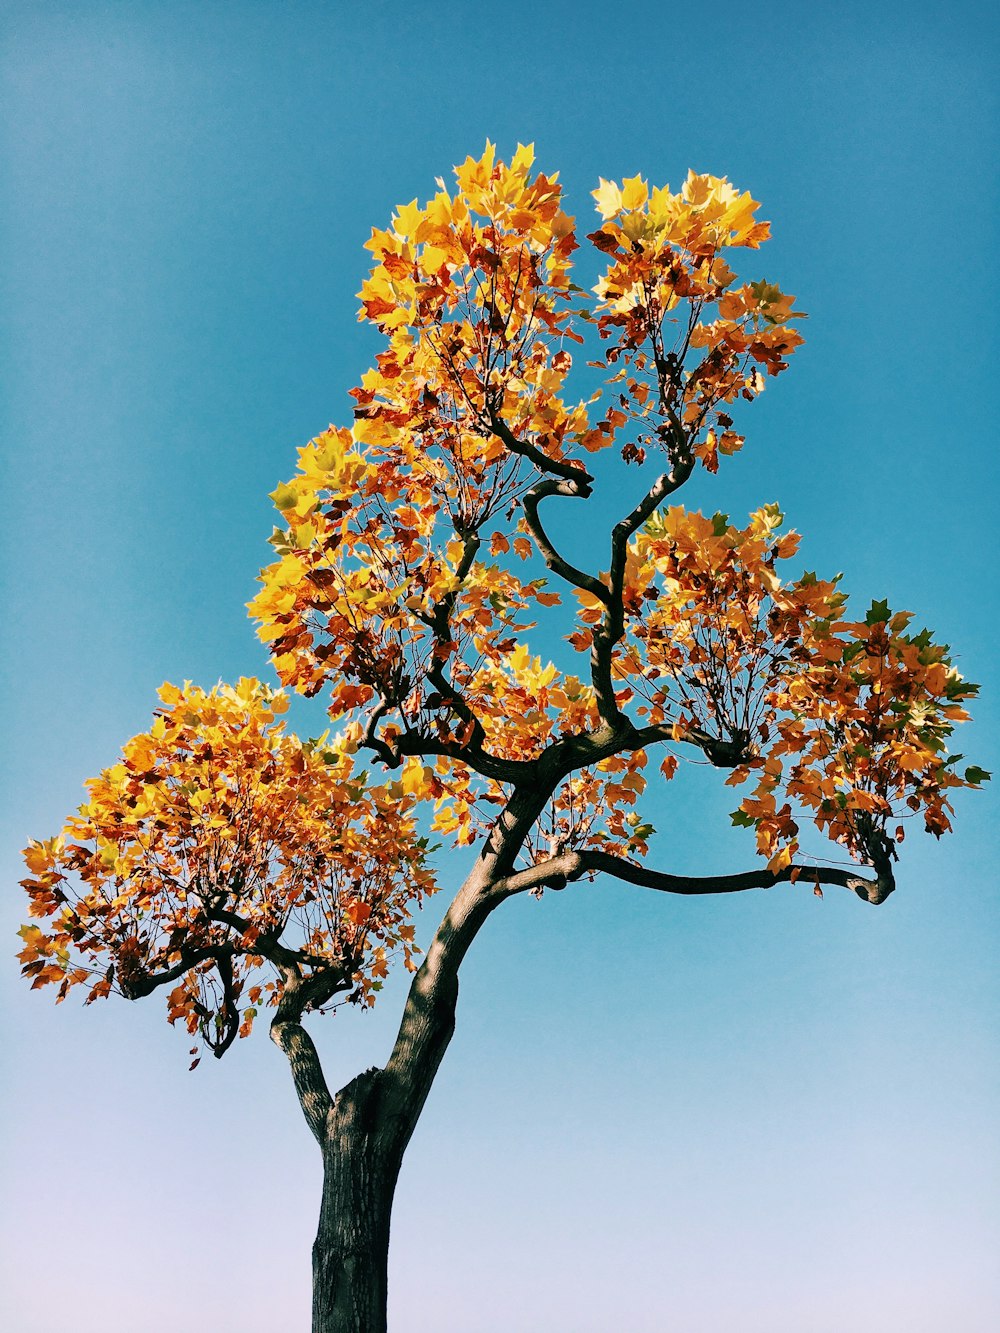 albero giallo e marrone sotto il cielo blu durante il giorno